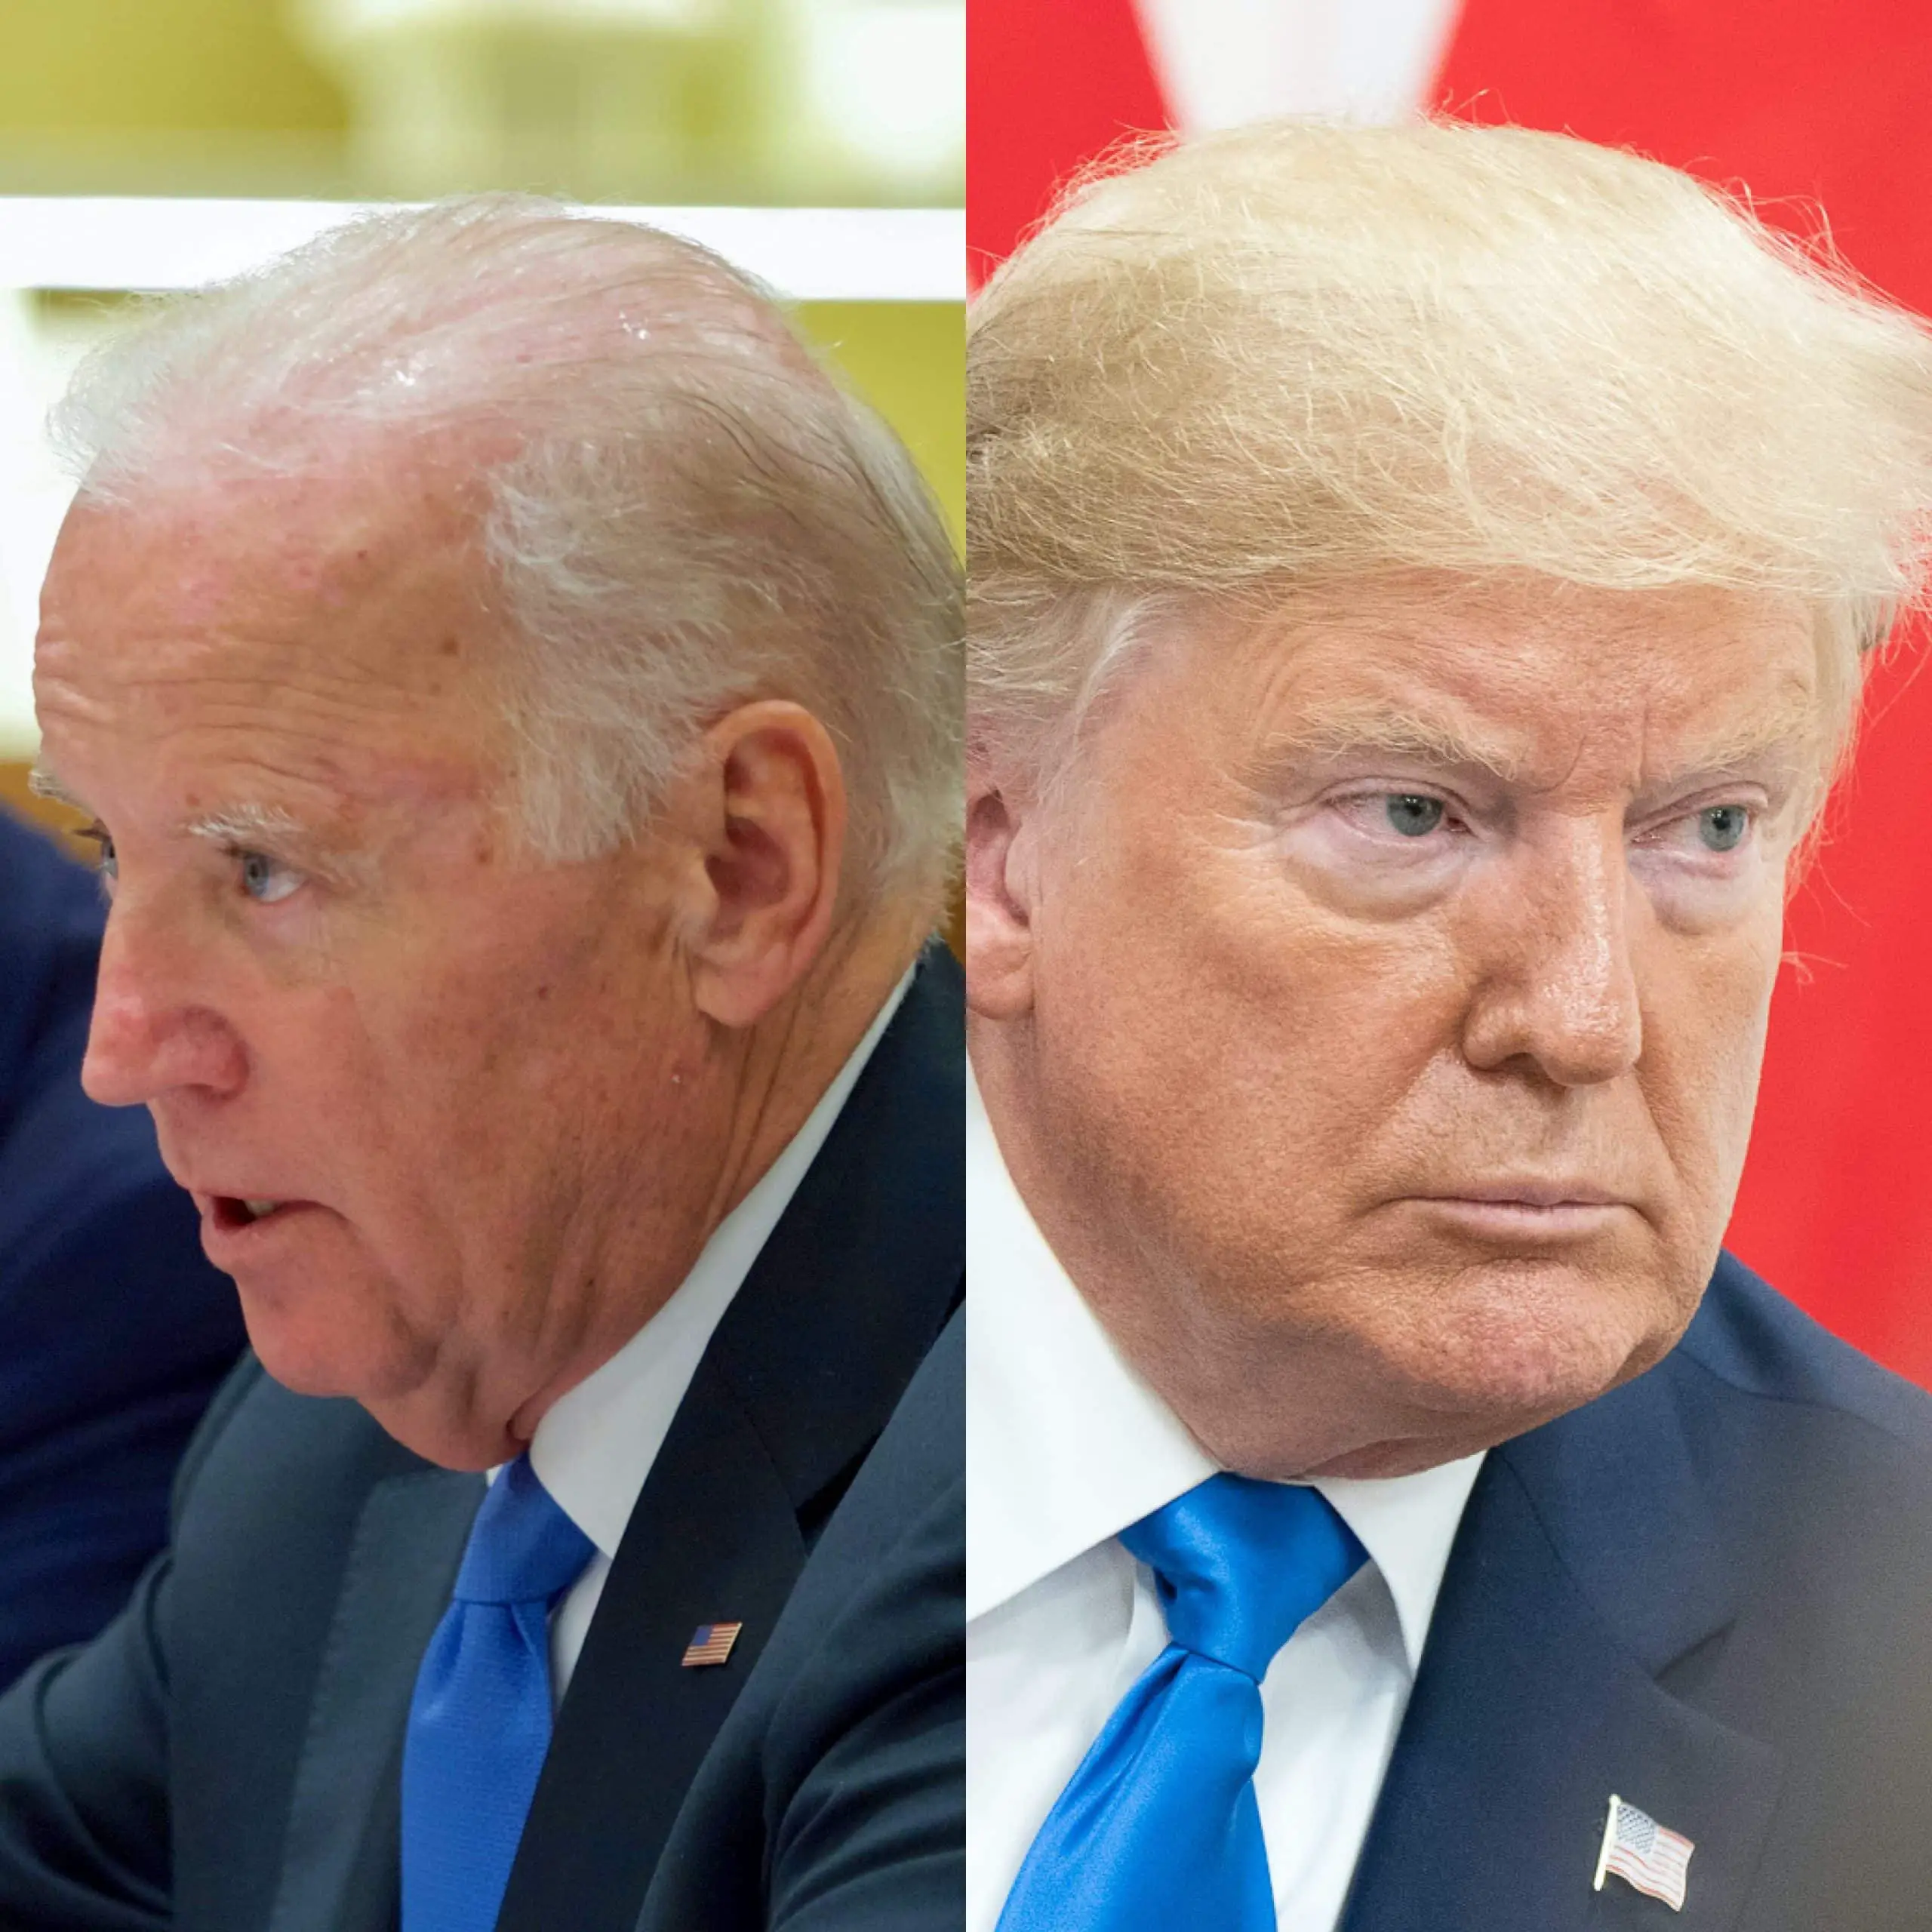 Trump, Biden participate in first presidential debate of 2020